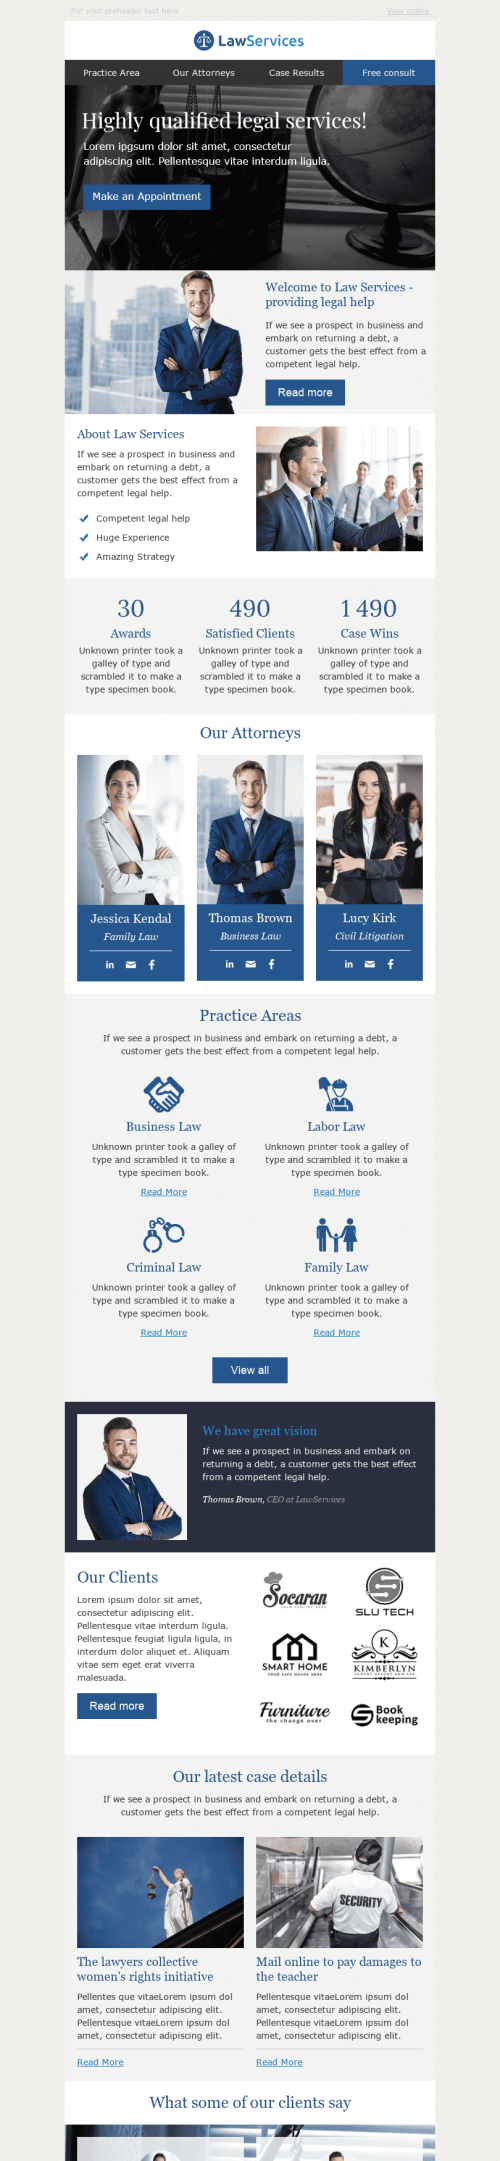 Modello Email Promo "Caso vincente" per il settore industriale di Servizi legali Visualizzazione mobile